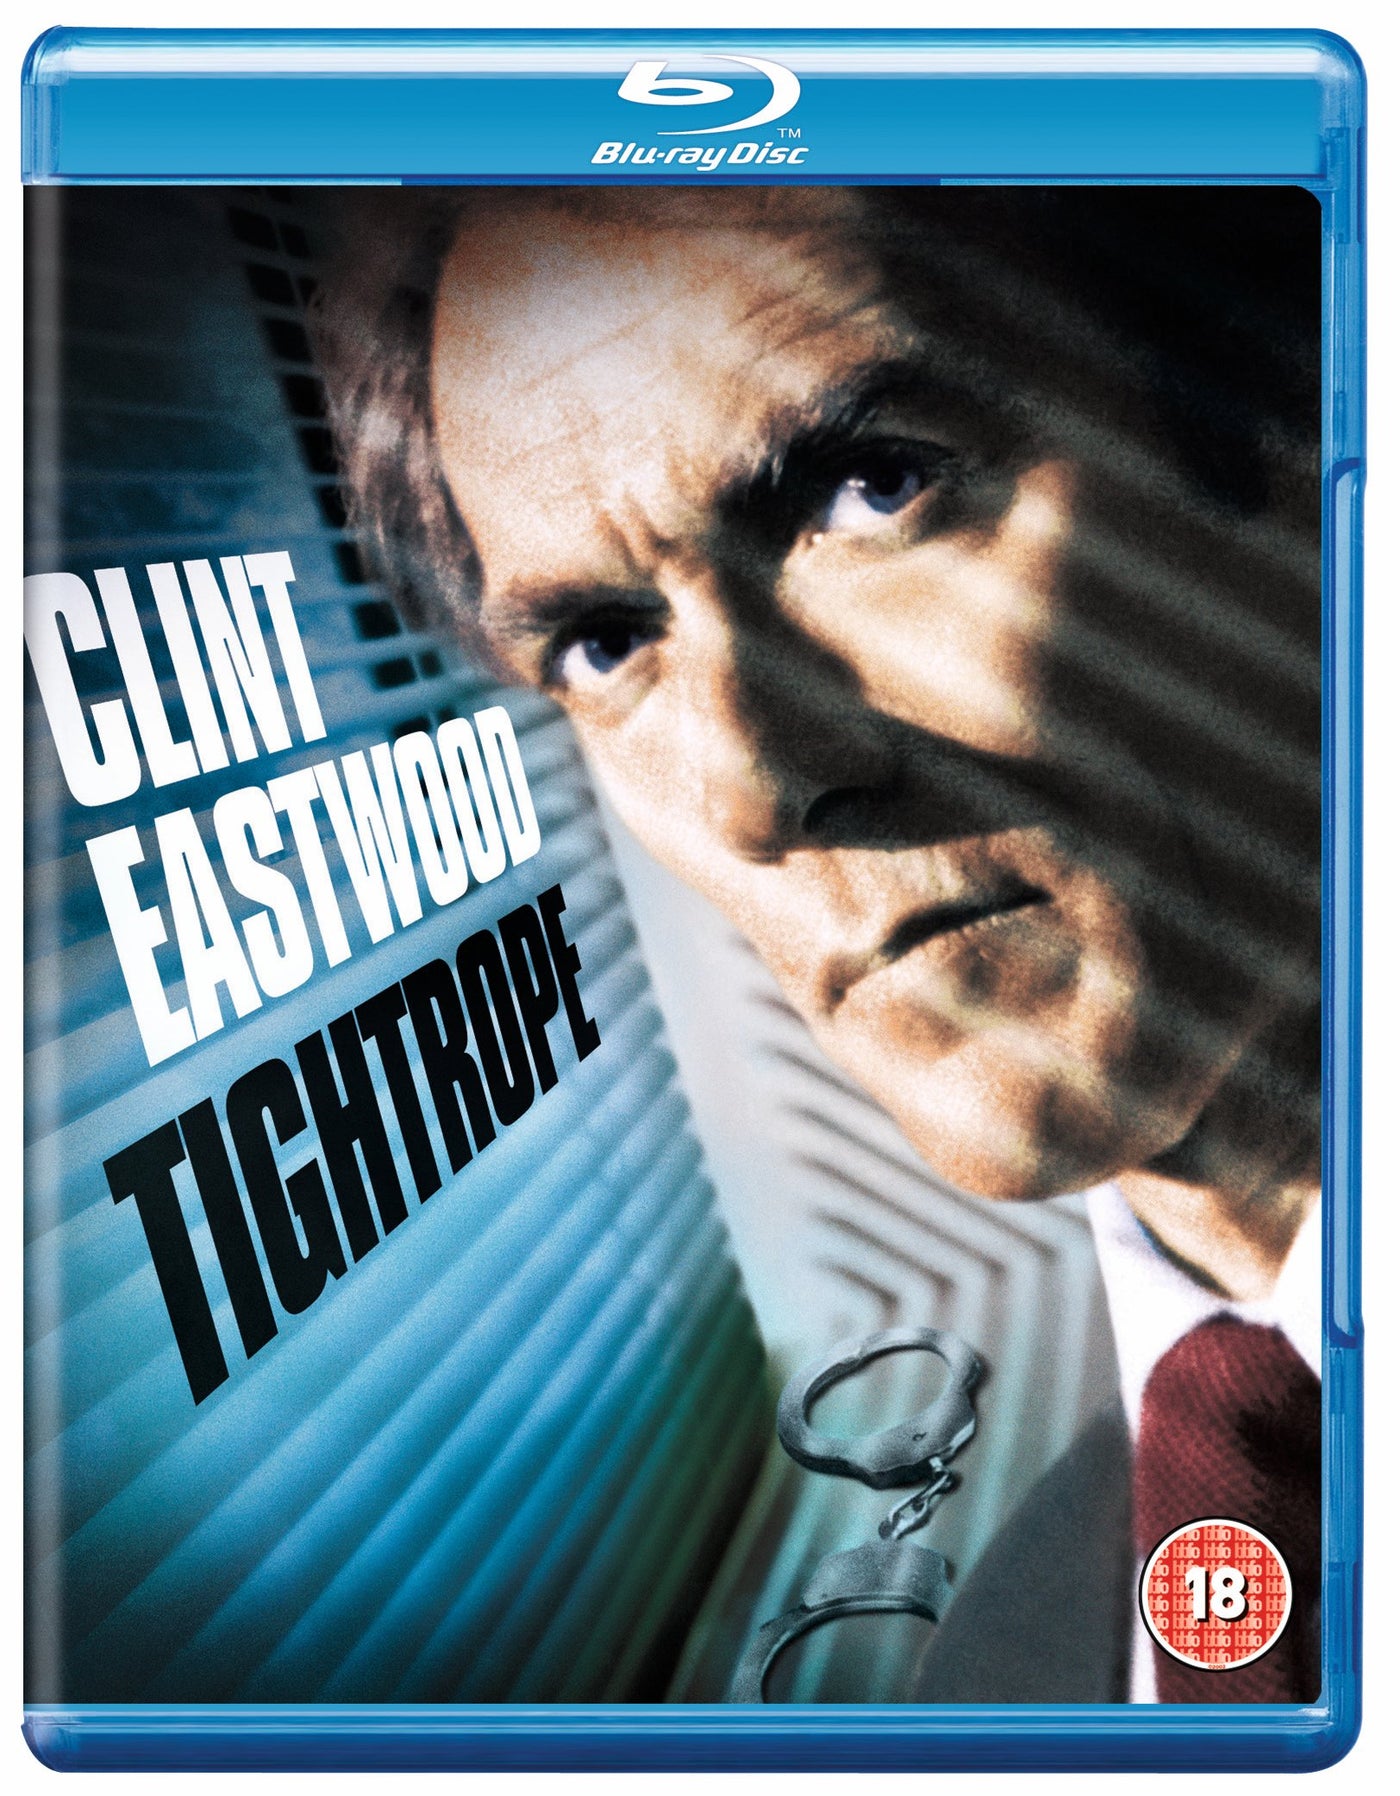 Tightrope [1984] (Blu-ray)